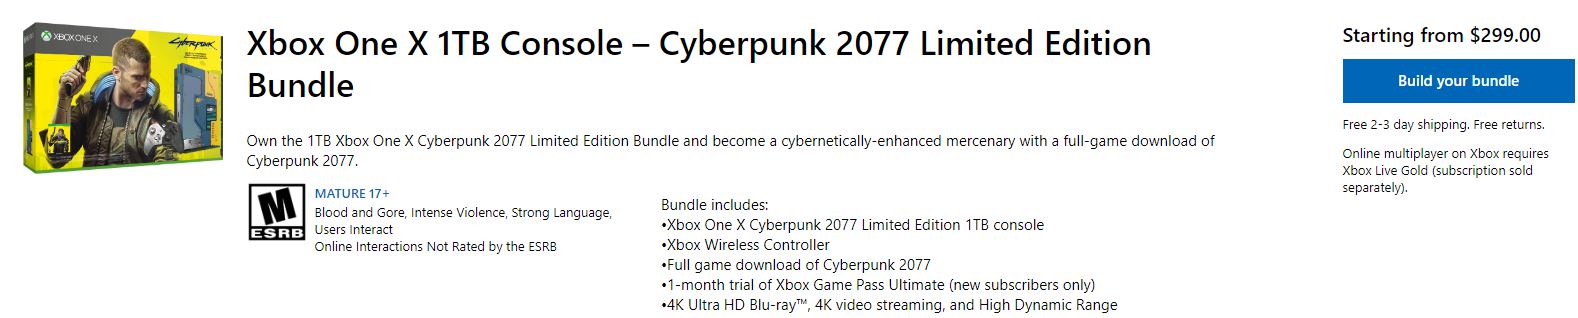 《電馭叛客2077》Xbox限定機美服上架 定價2121元